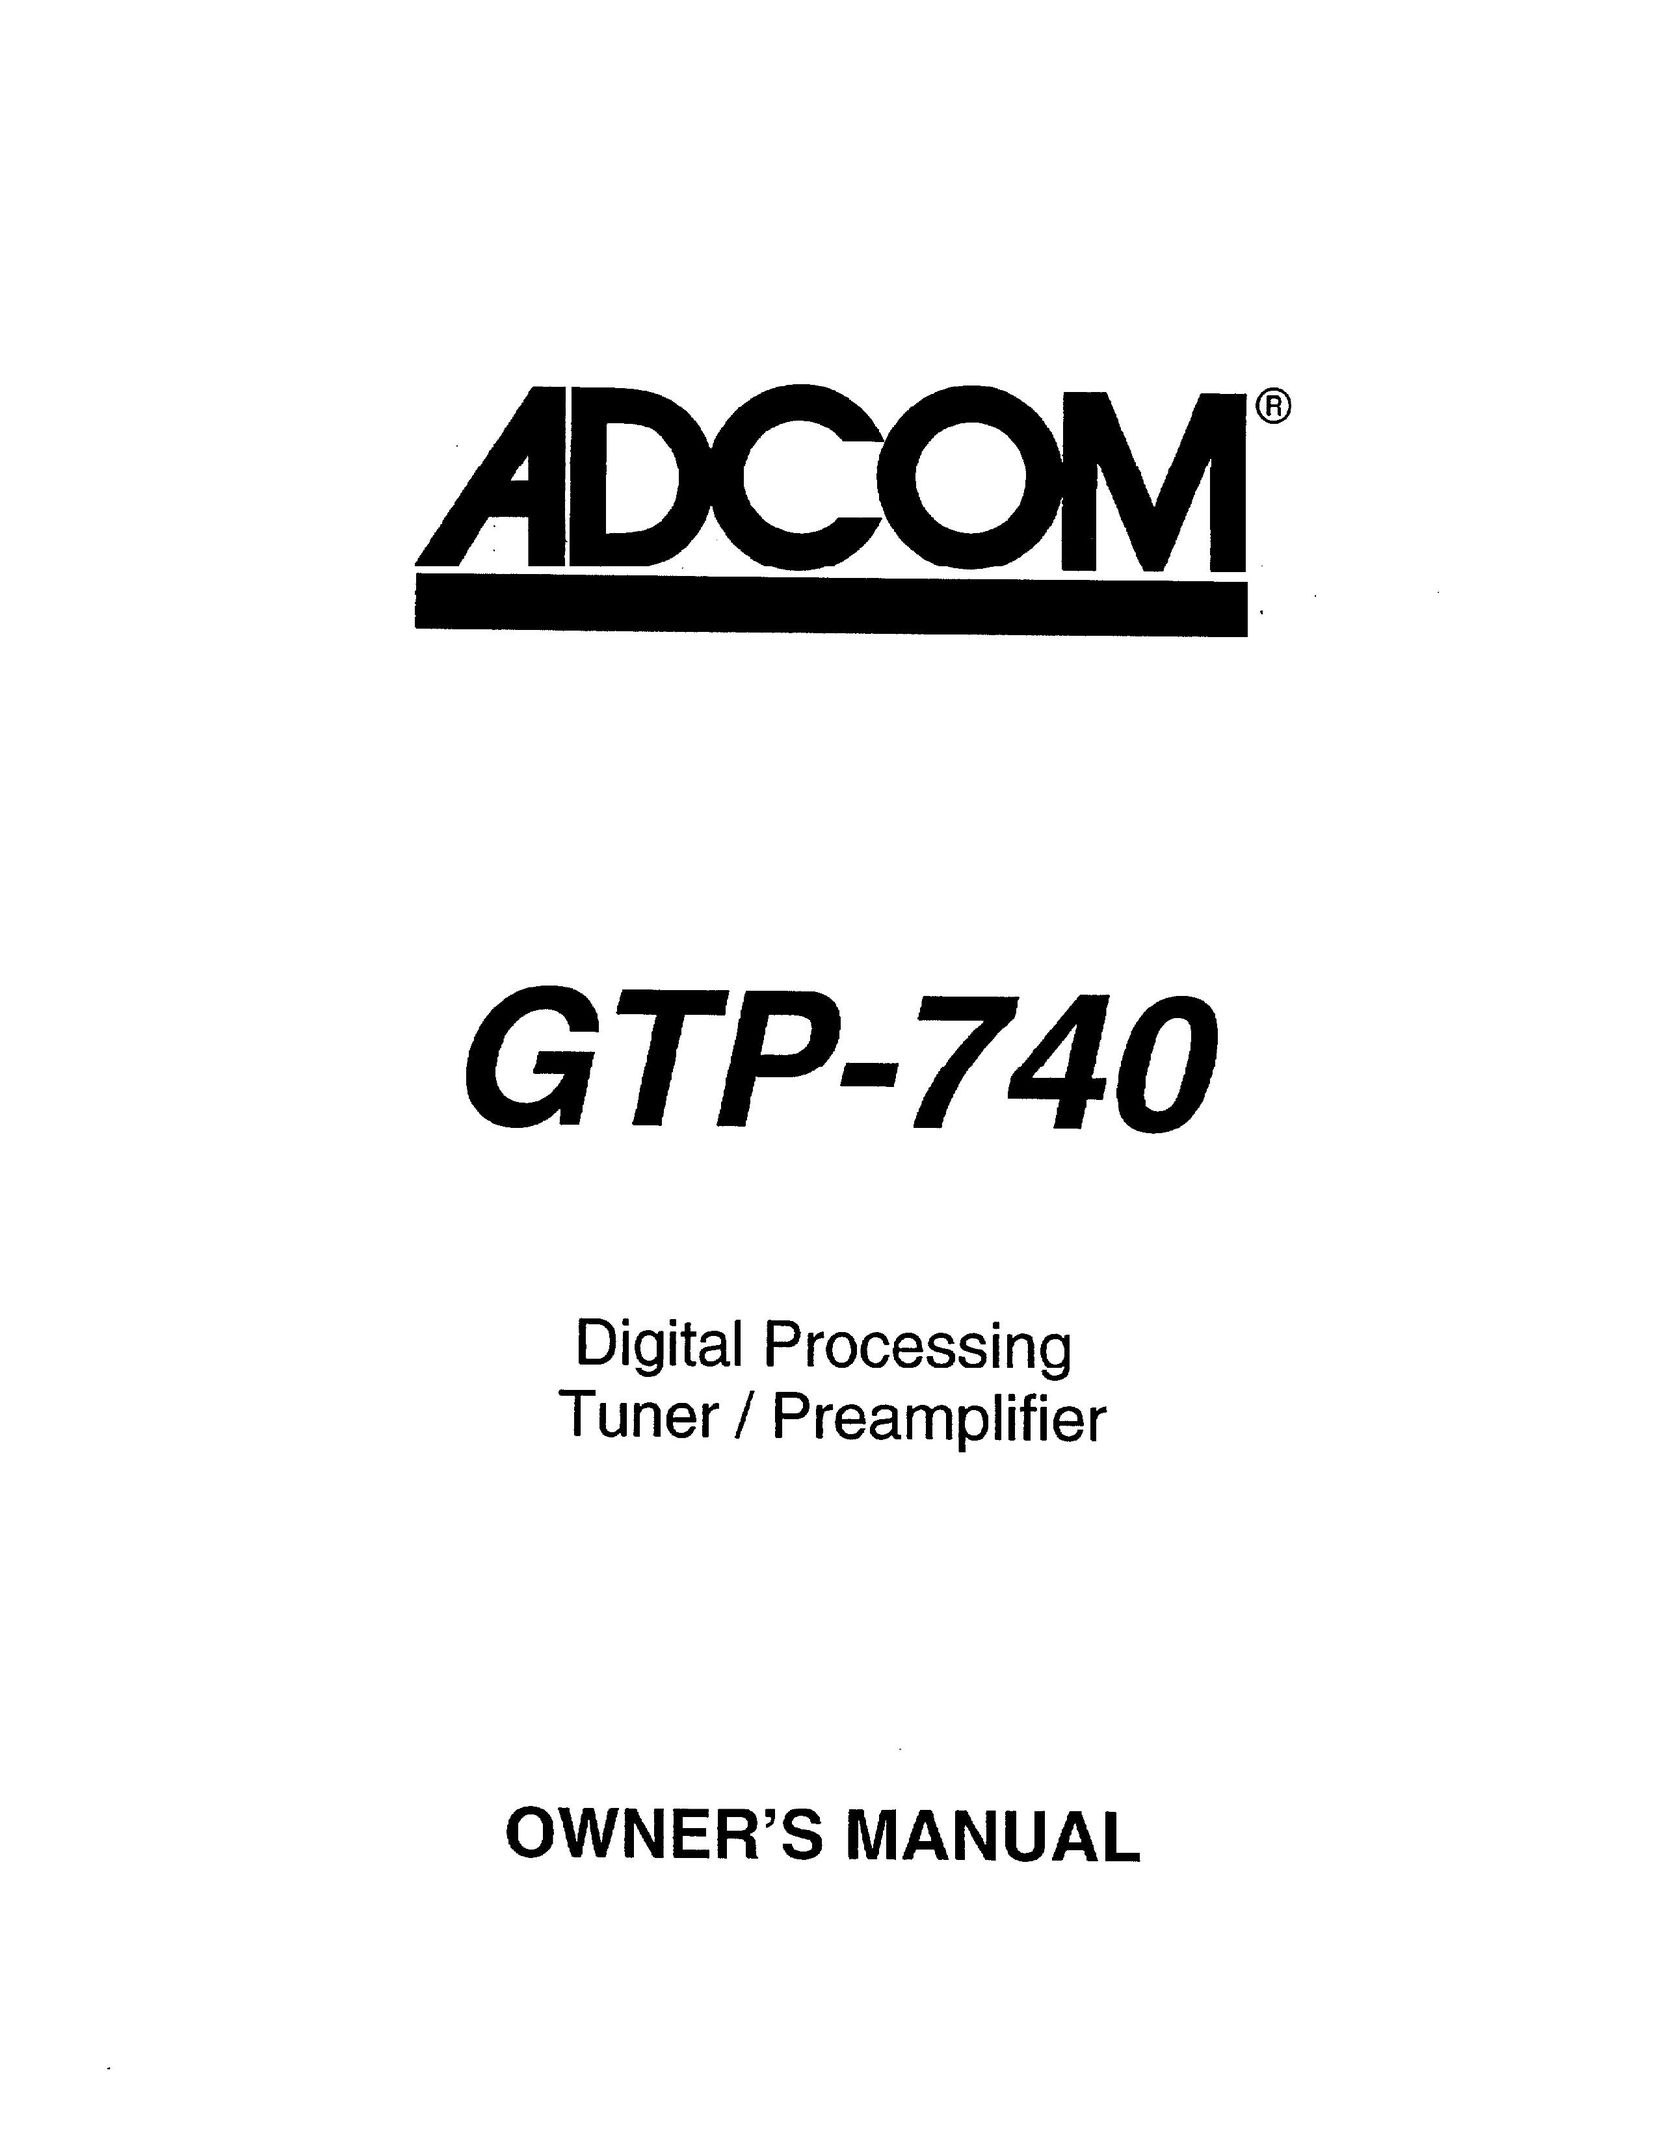 Adcom GTP-740 TV Receiver User Manual